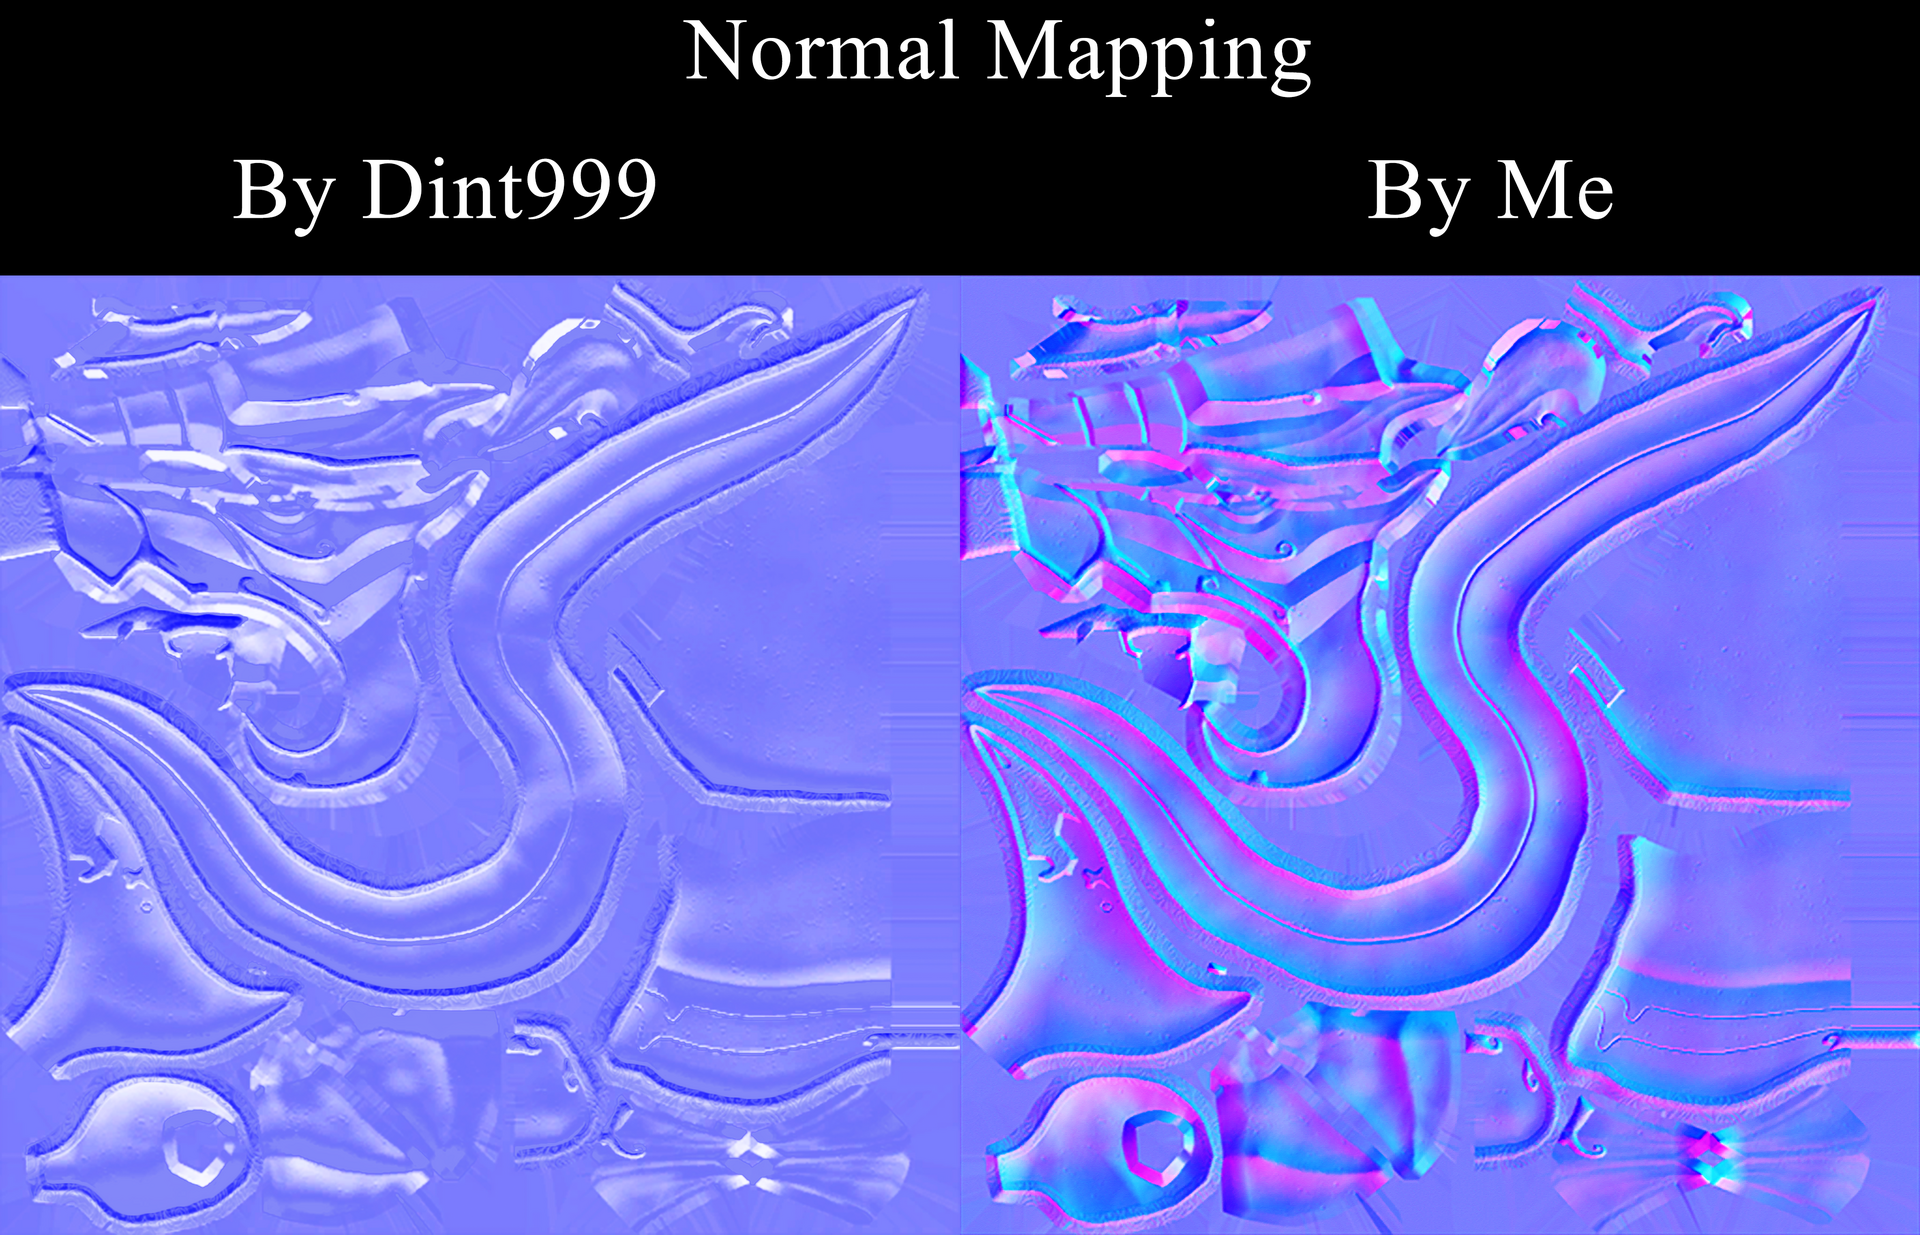 Normalmap.thumb.png.7d7ffb0d5bcaaa1cf553777a3dce1290.png